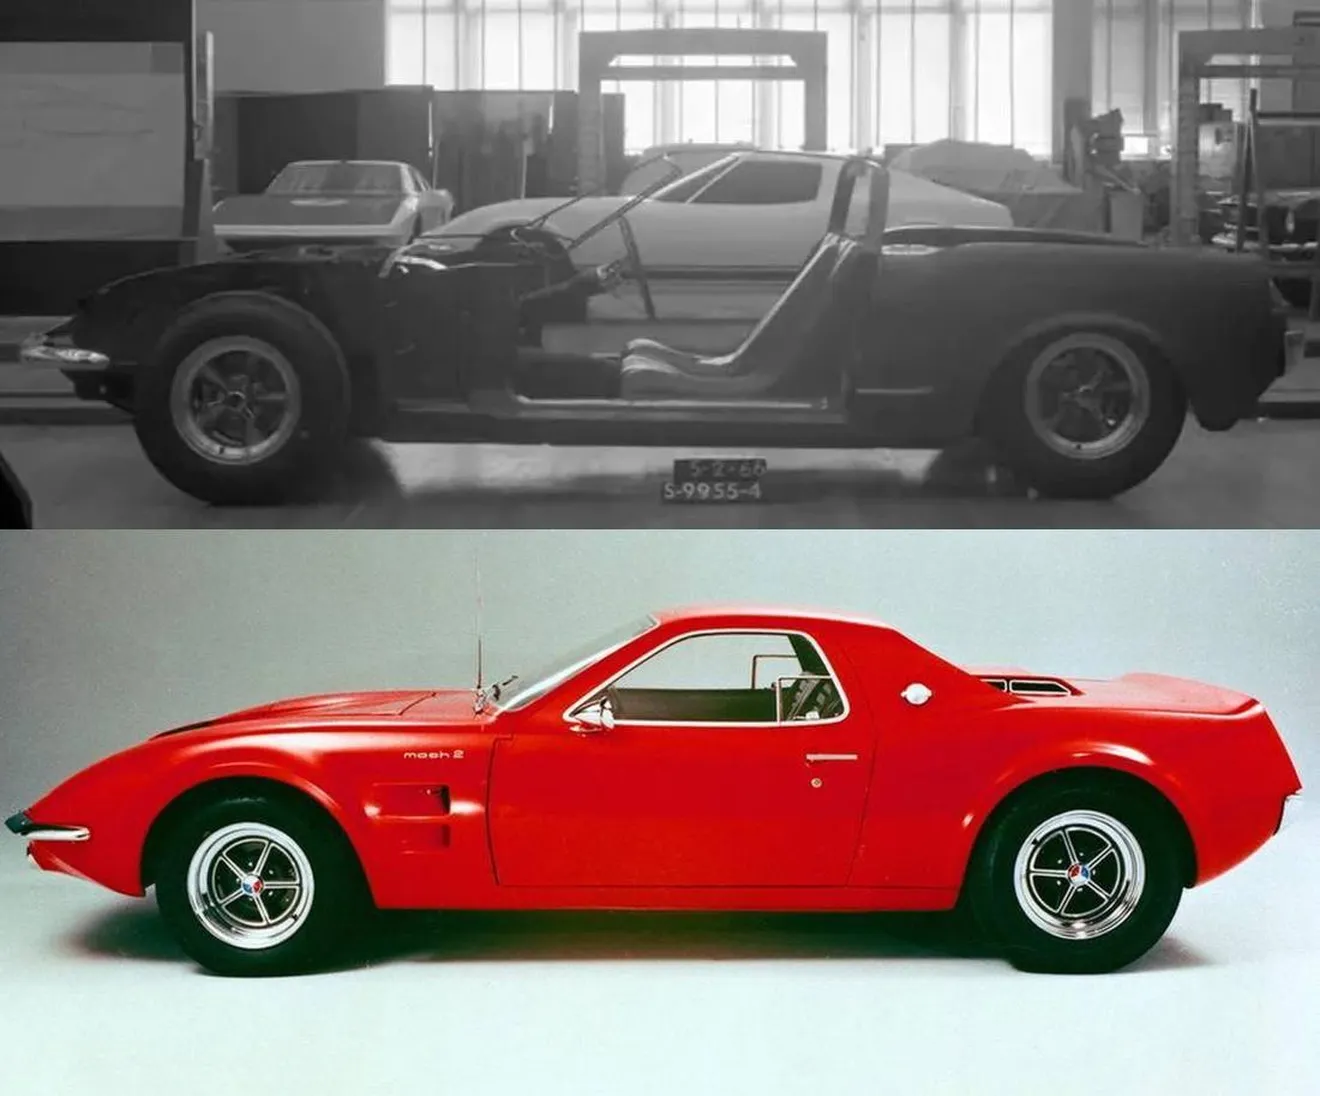 El misterioso prototipo de motor central resultó ser el Ford Mustang Mach 2